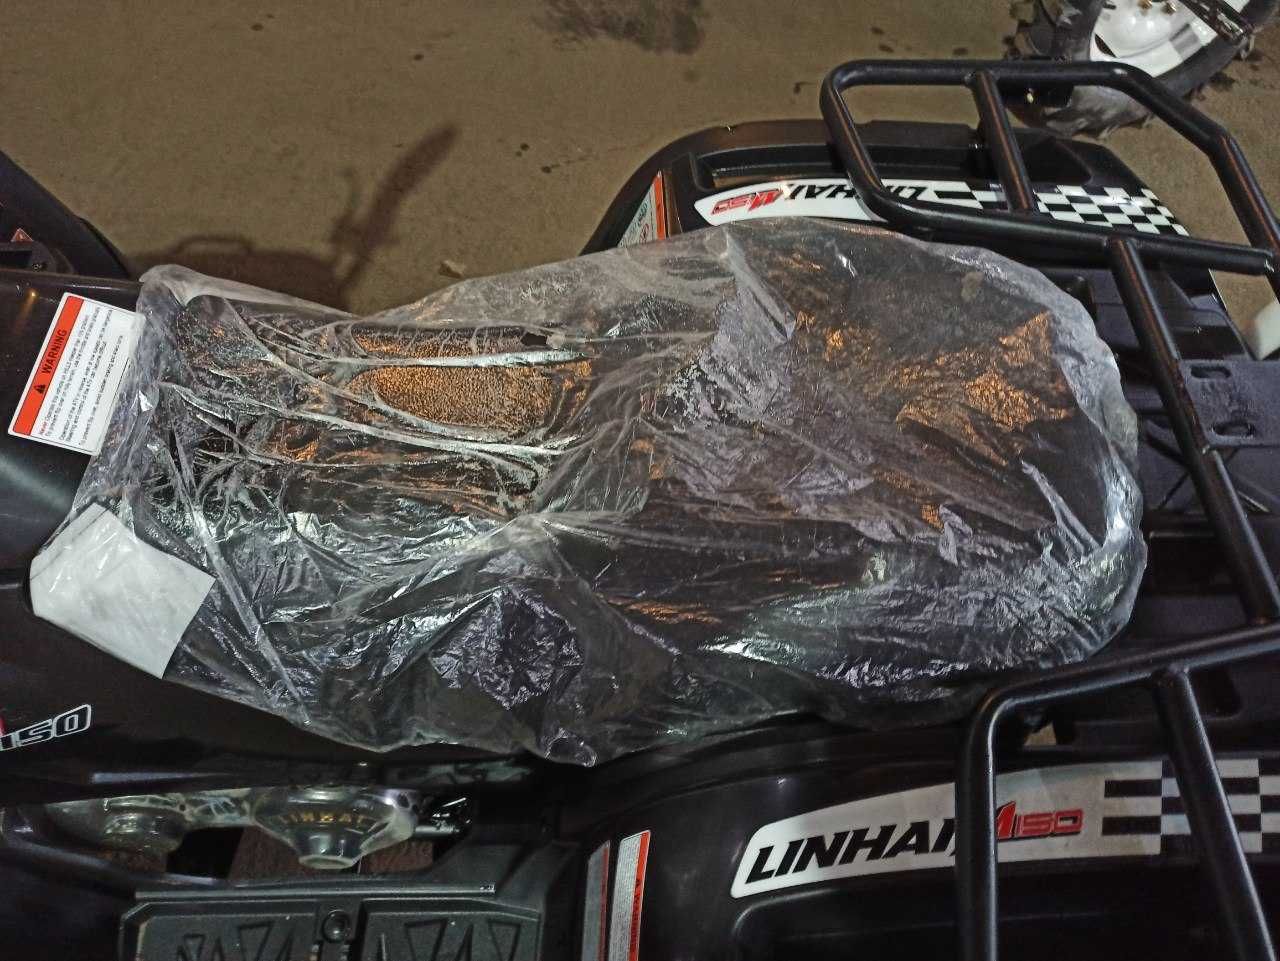 Квадроцикл Лінхай 150 - гарантія 2 роки, безкоштовна доставка додому